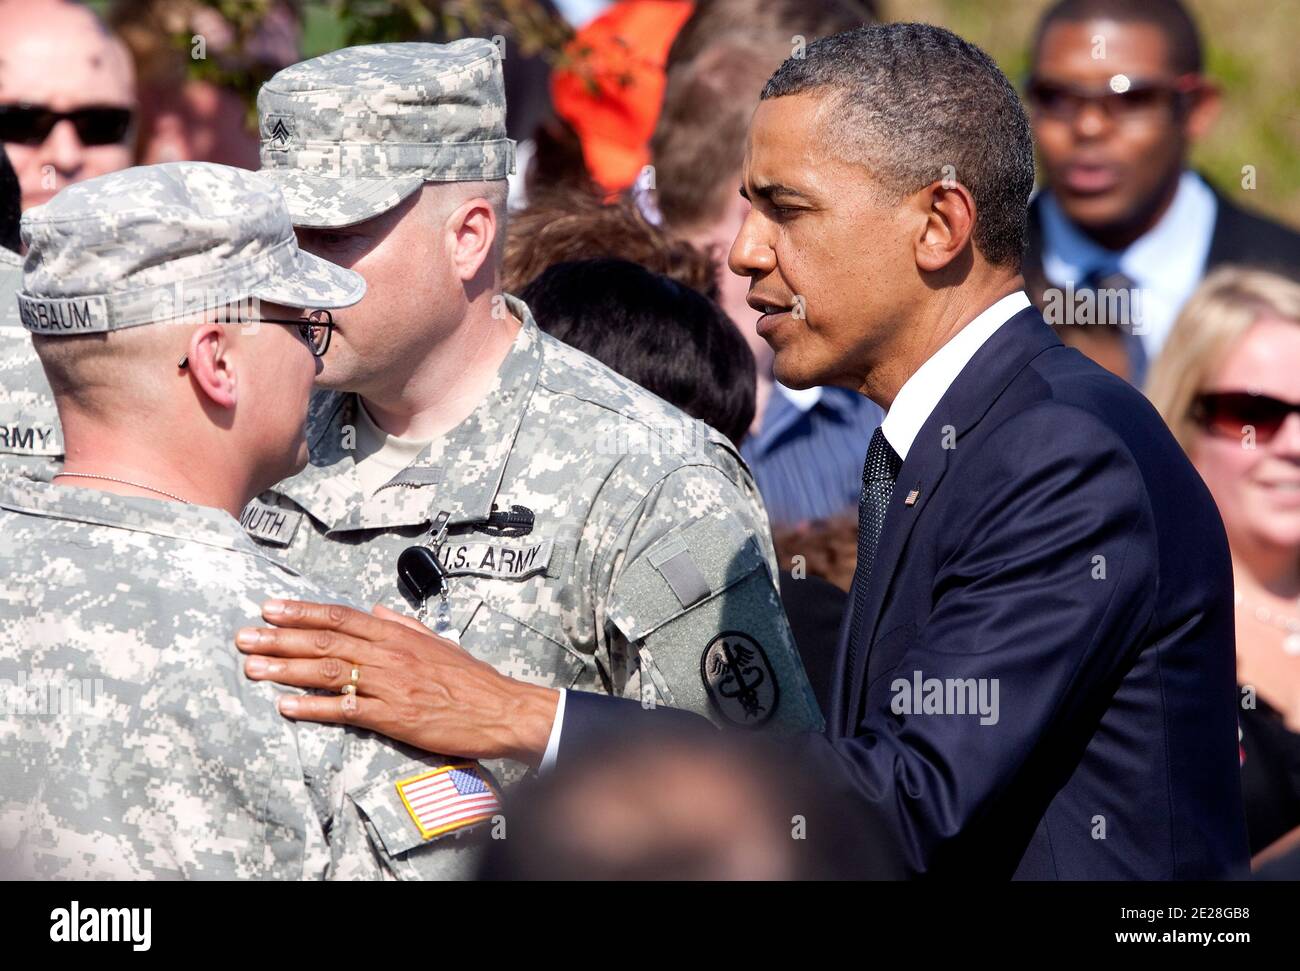 Il presidente degli Stati Uniti Barack Obama saluta i soldati durante una cerimonia di ricordo al Pentagono ad Arlington, VA, USA il 11 settembre 2011. Foto di Joshua Roberts/ABACAPRESS.COM Foto Stock